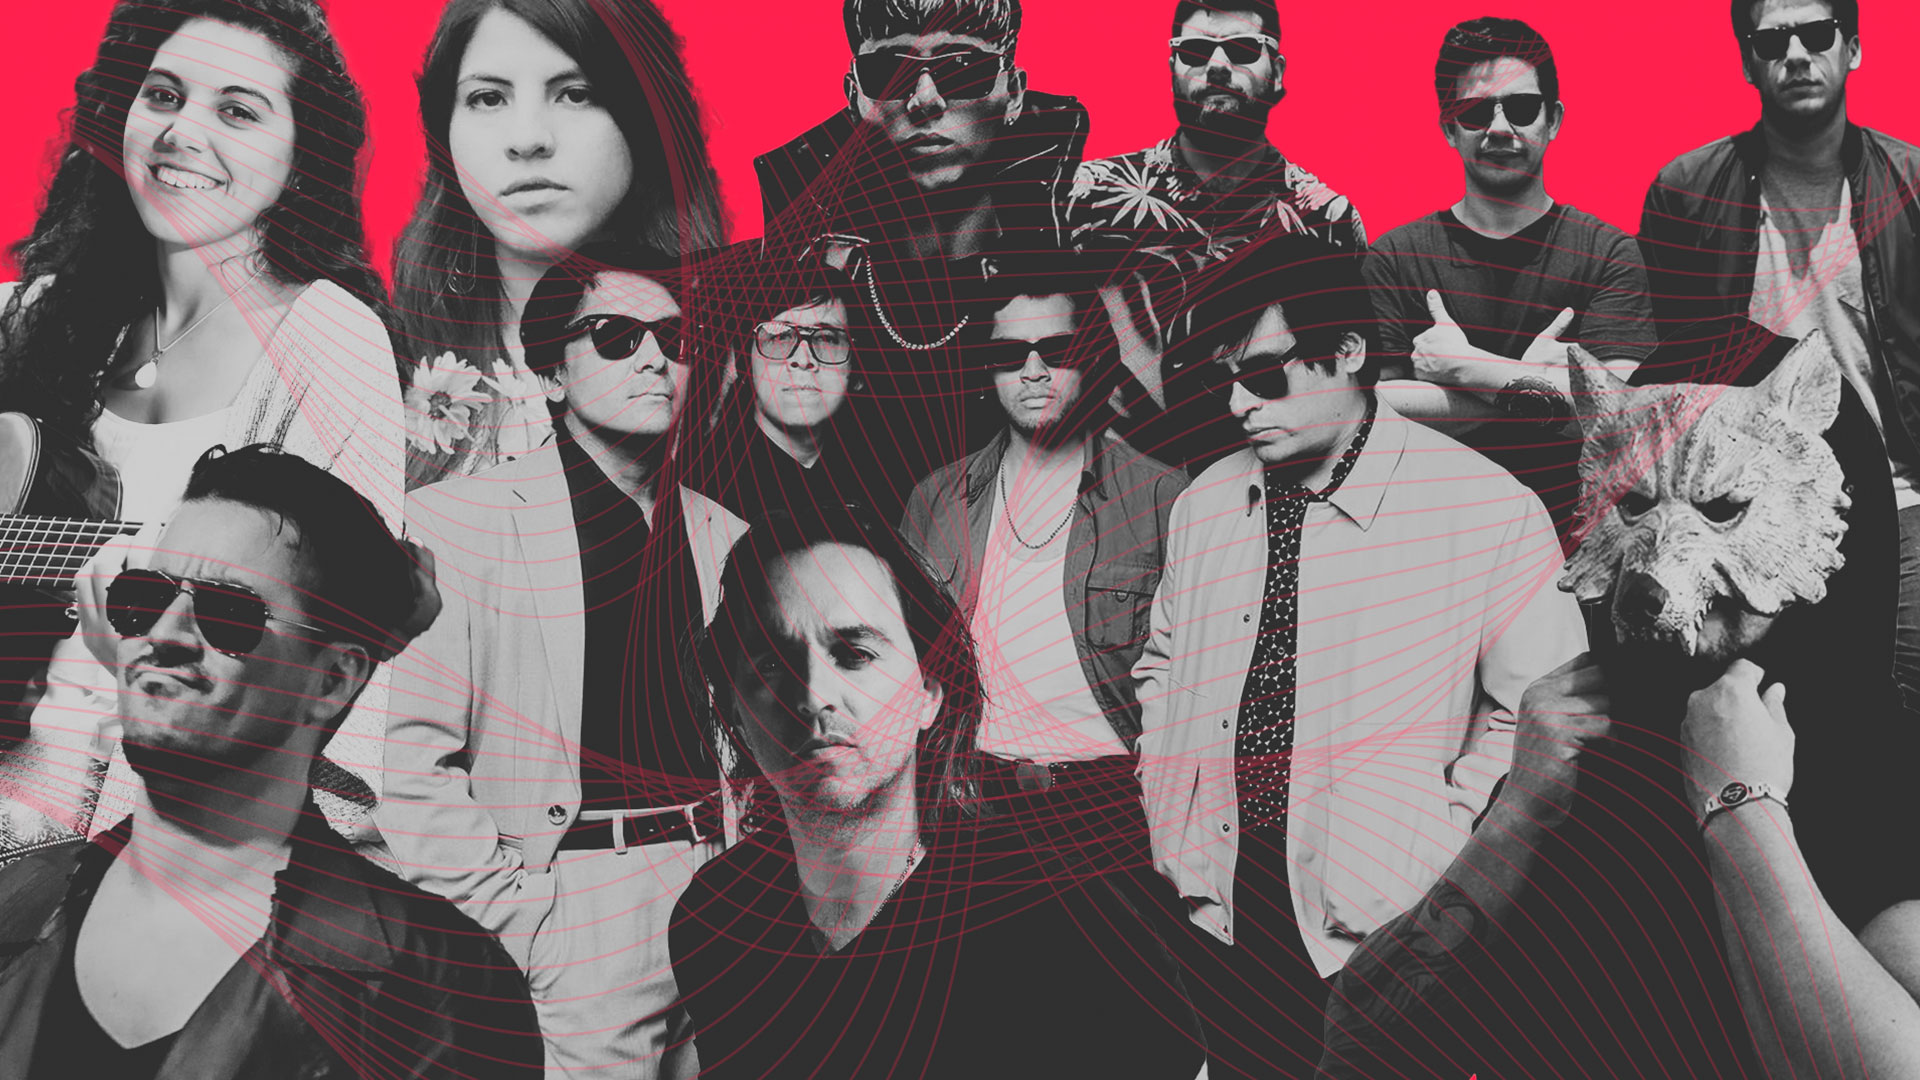 Plutonio de Alto Grado, Aura Blum, Rafaell Cocoa y otros artistas peruanos con nueva música en un collage con fondo rojo